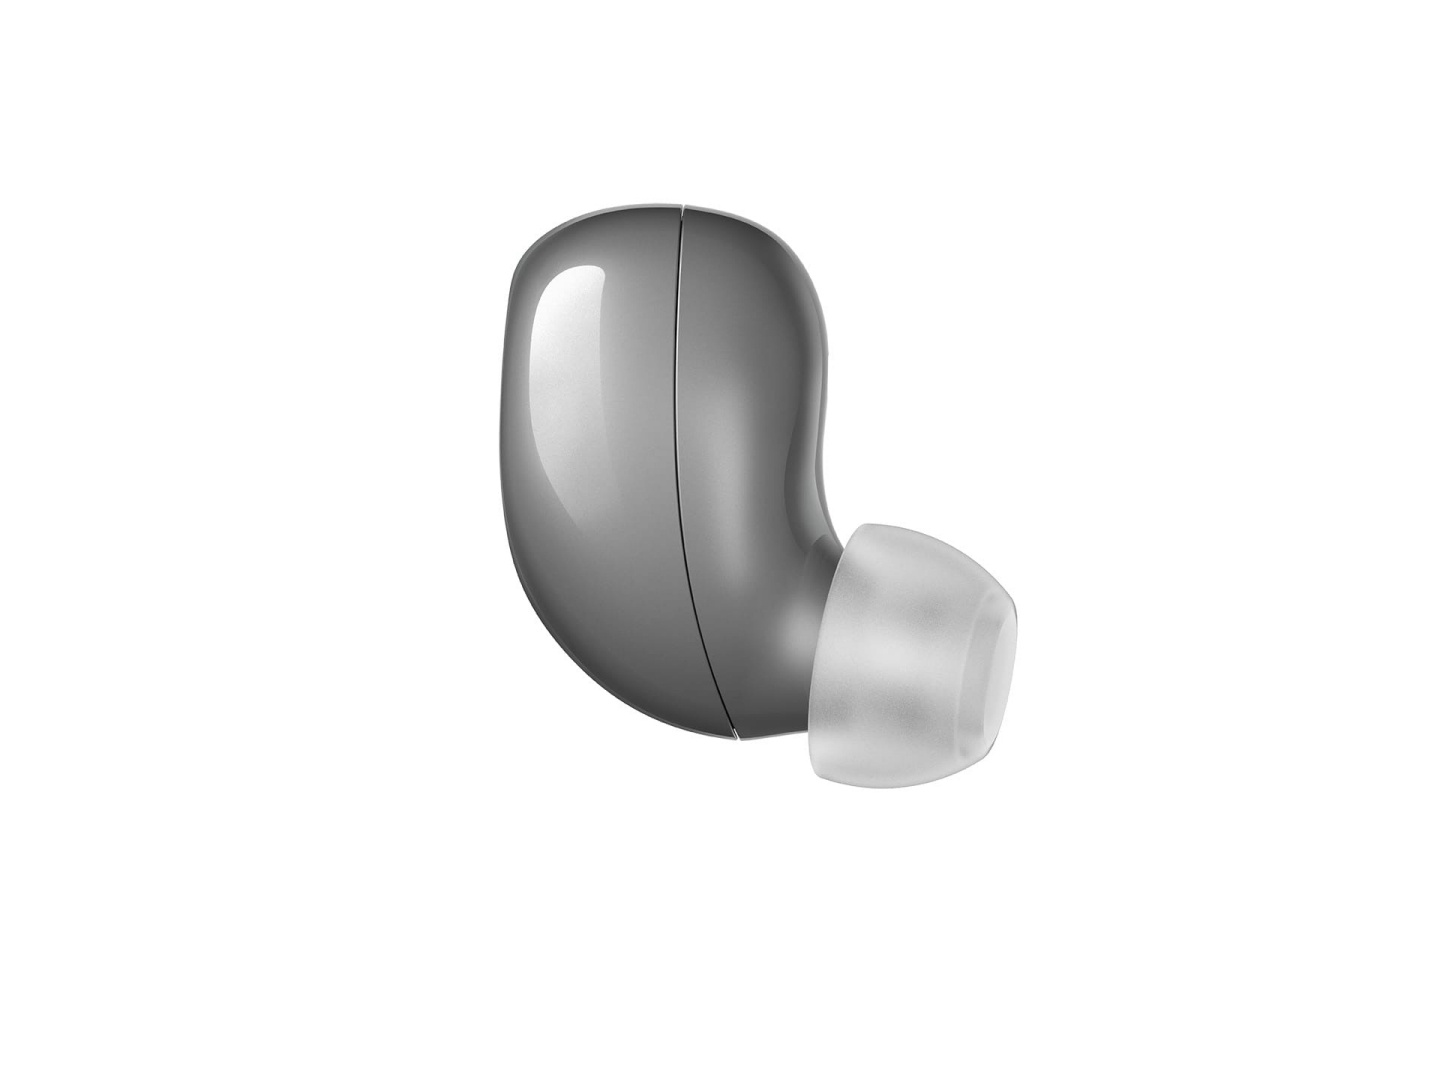 英國知名音響品牌 KEF 也推出首款真無線藍牙降噪耳機『 Mu3 』在台售價 6,799 台幣